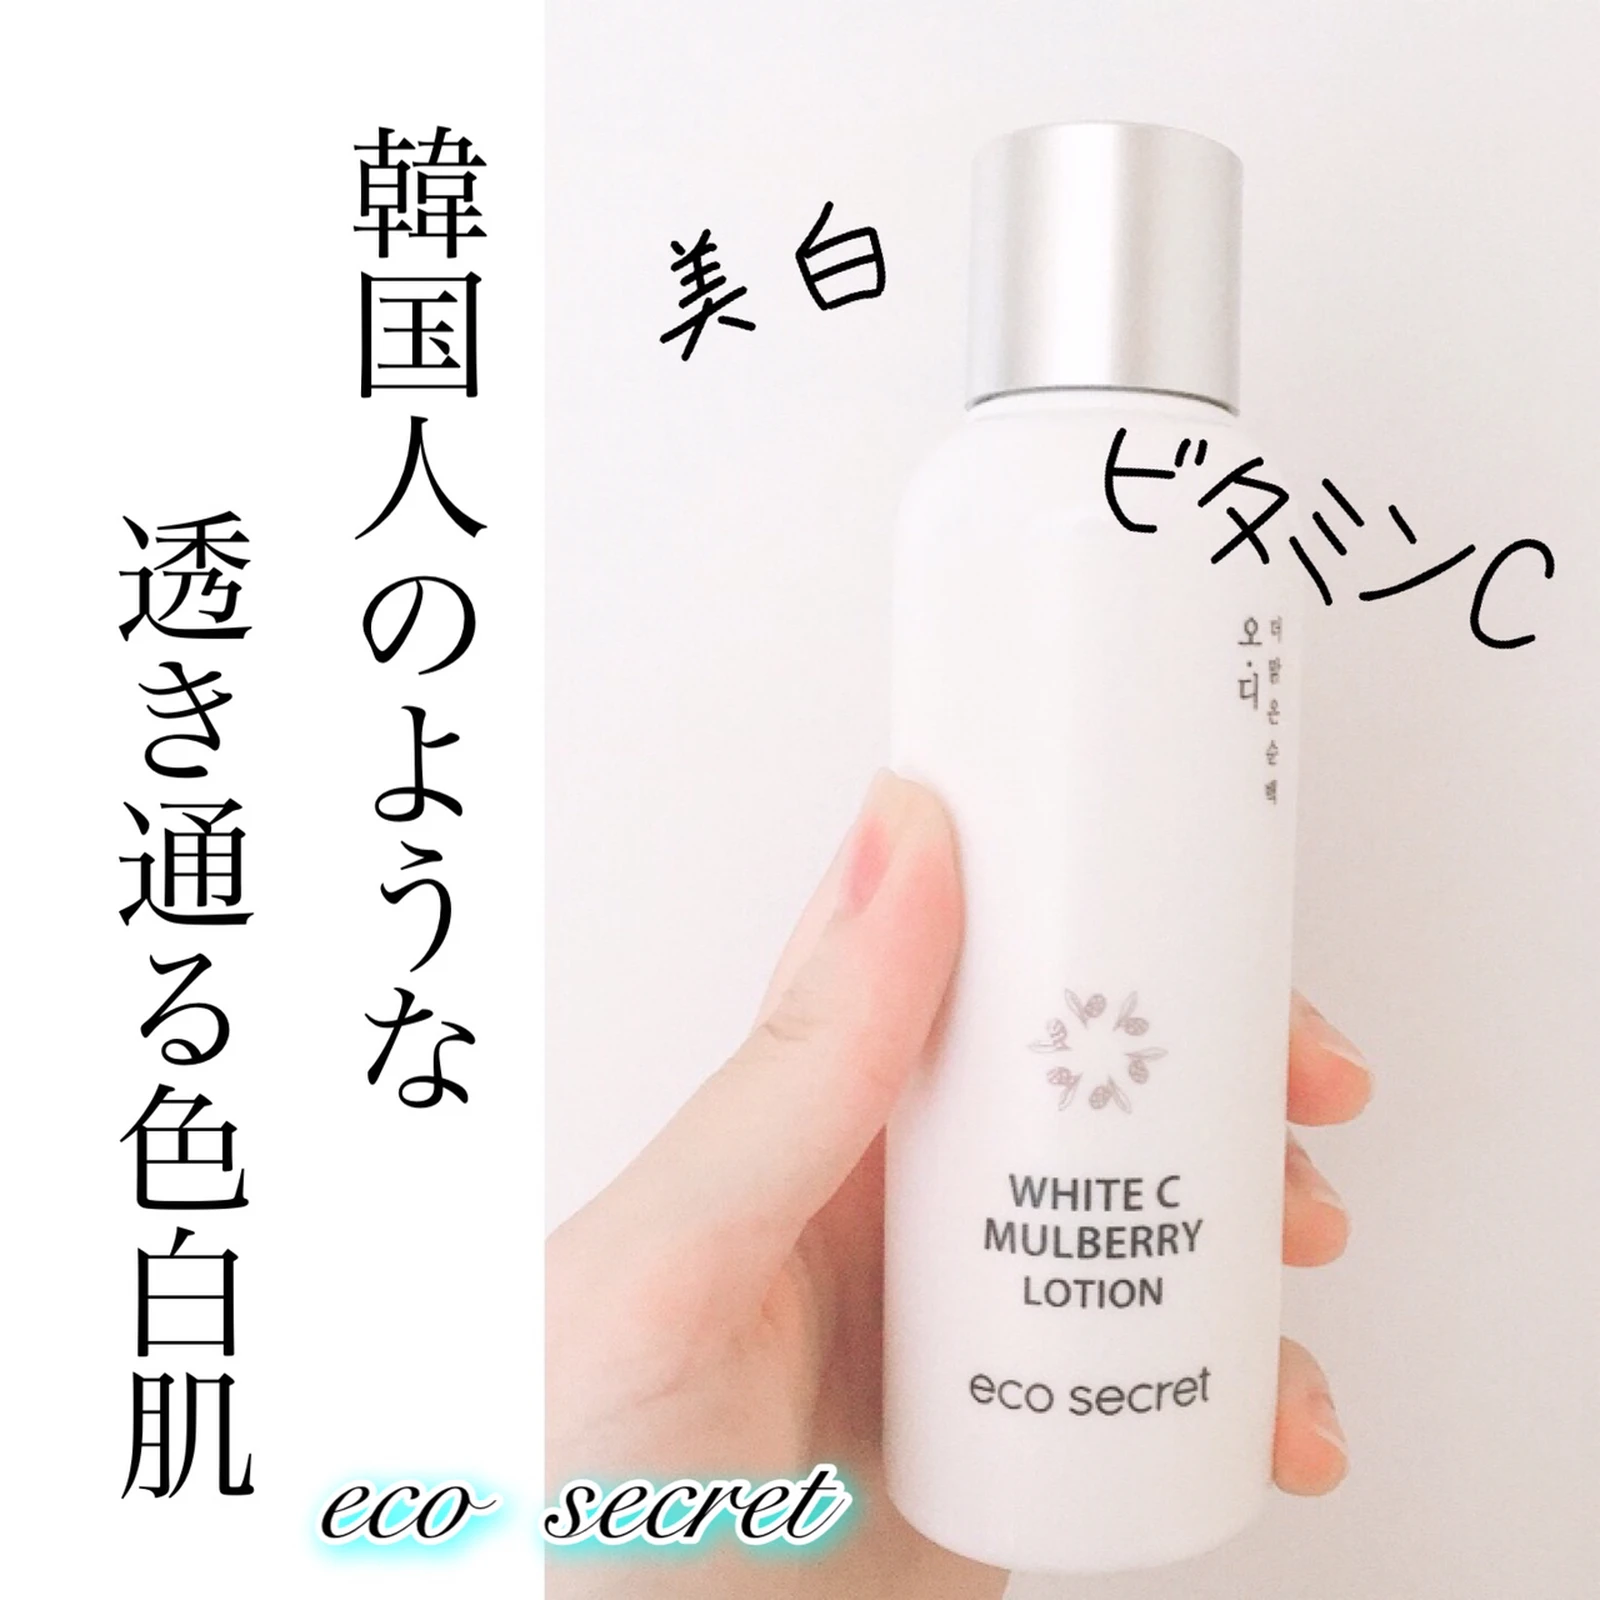 バシャバシャ使える韓国の美白化粧水 Yunaコスメが投稿したフォトブック Lemon8